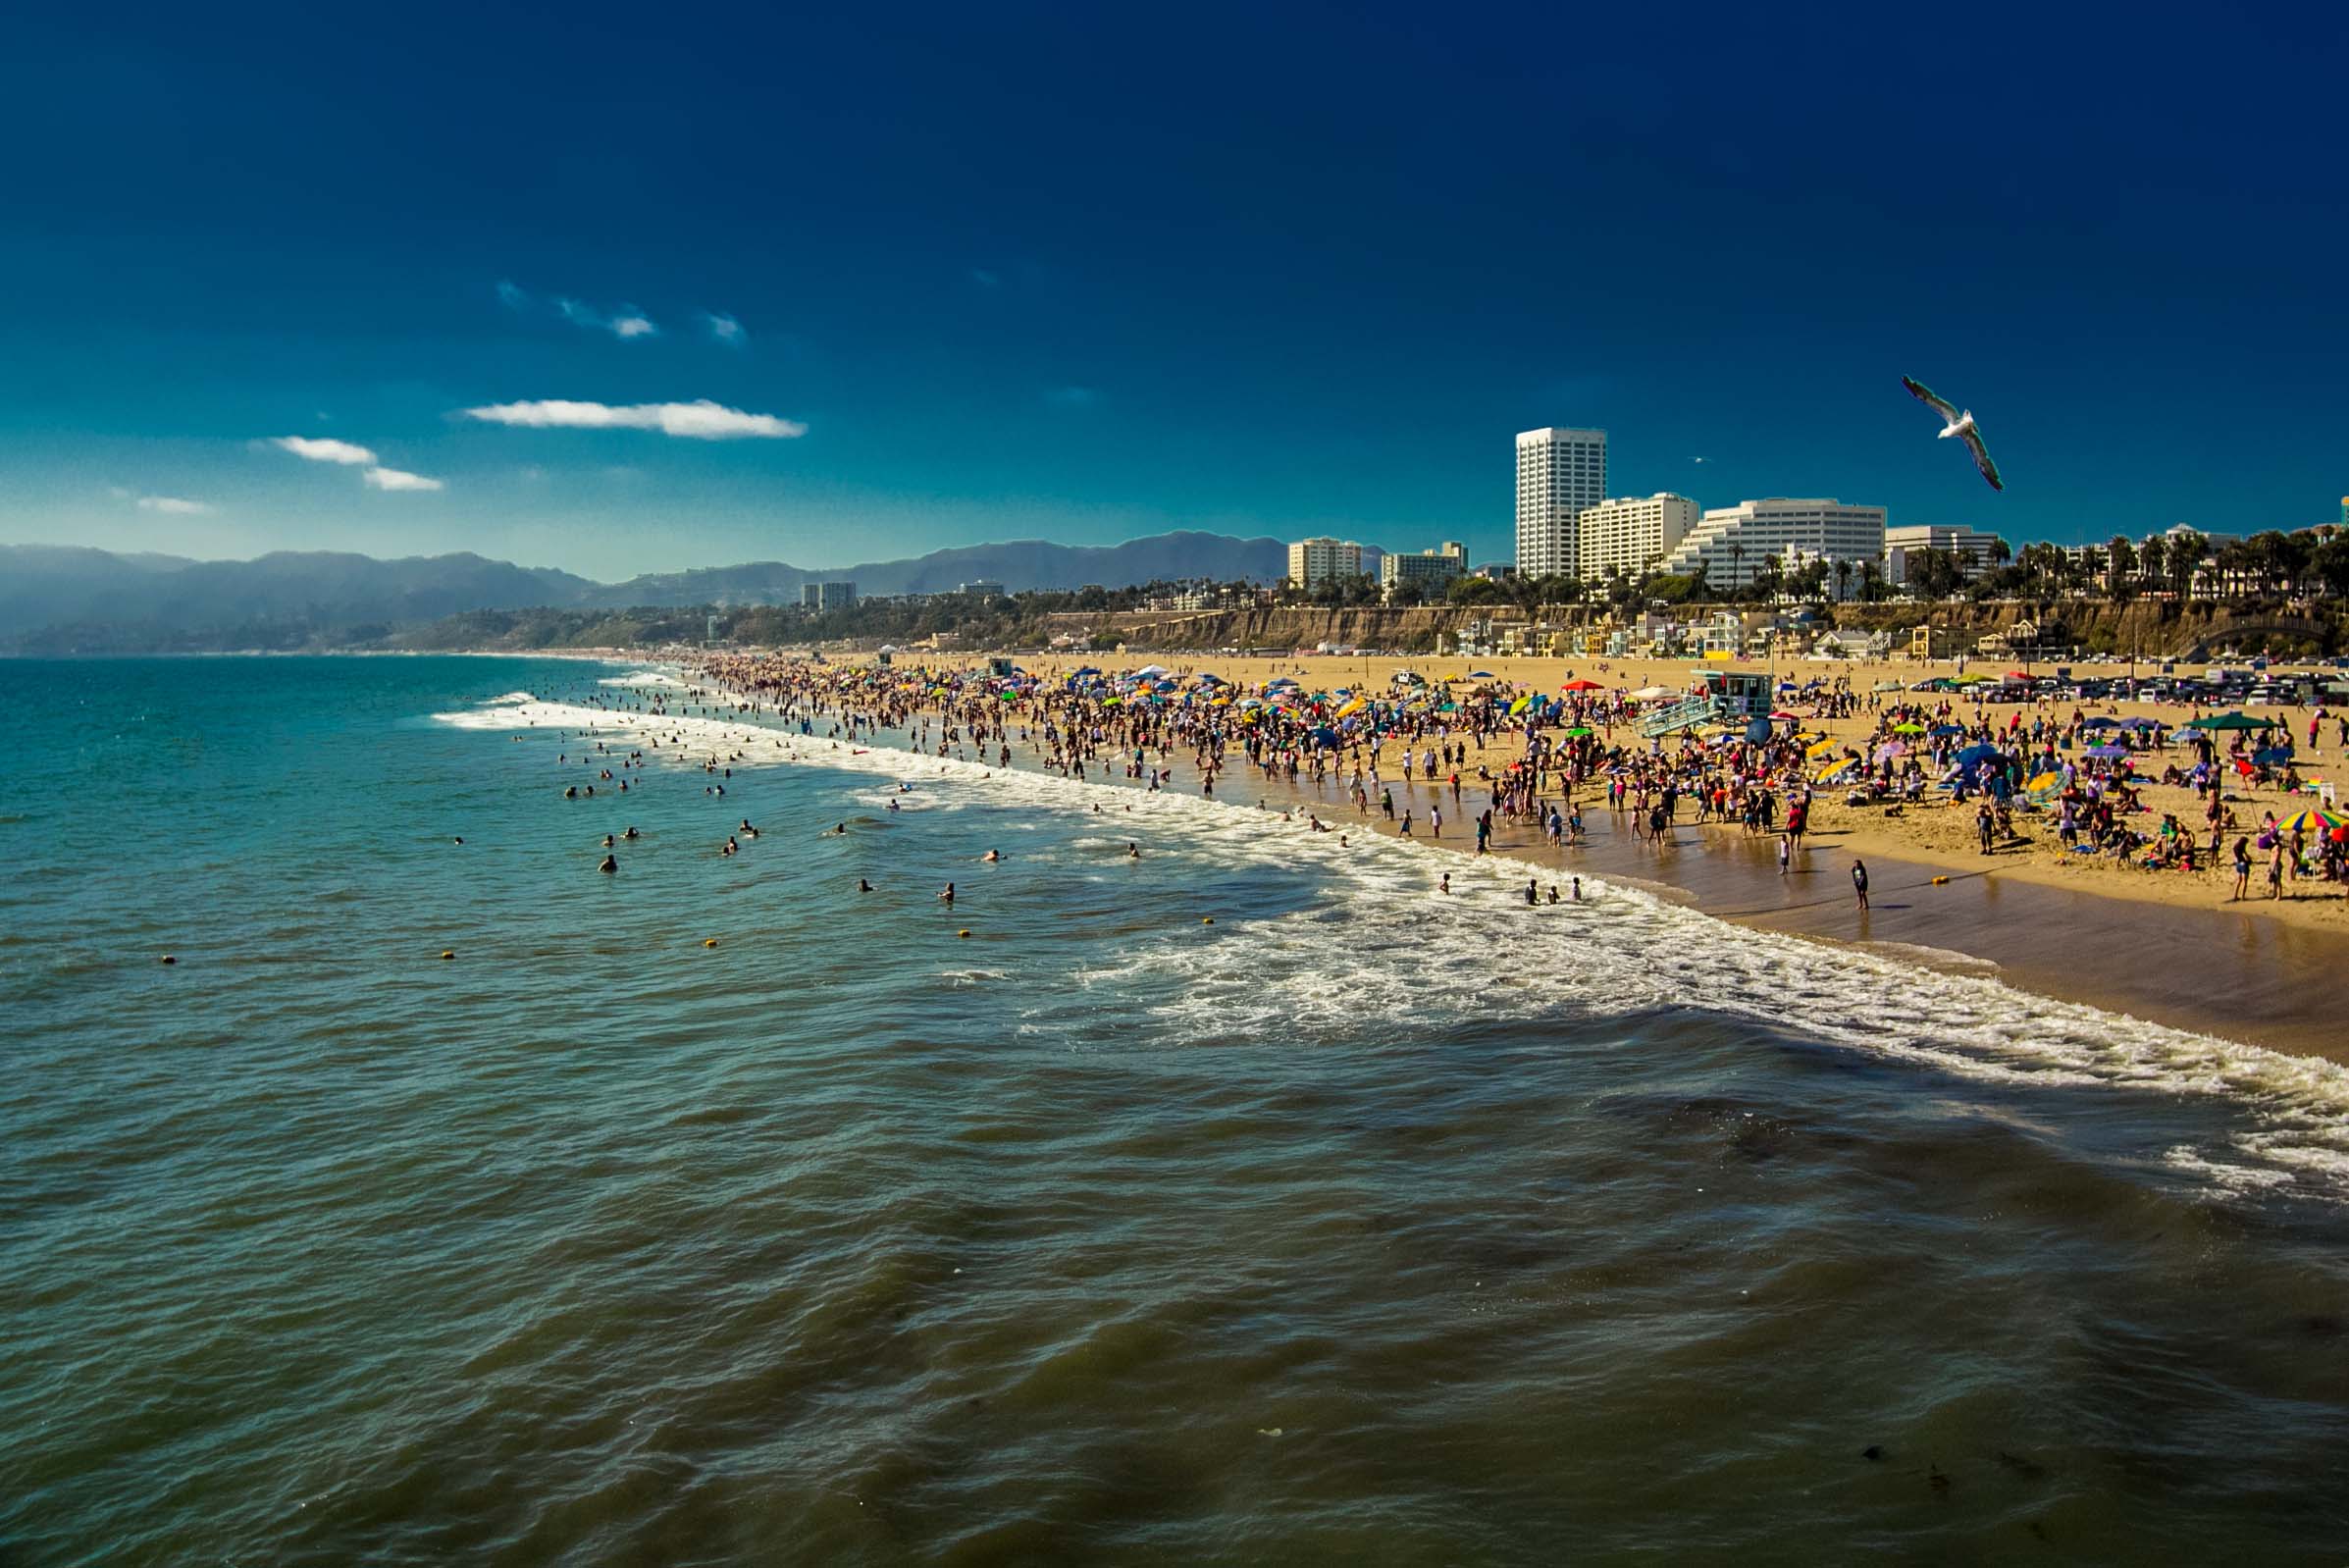 Santa Monica Beach Photo By Wallpaper